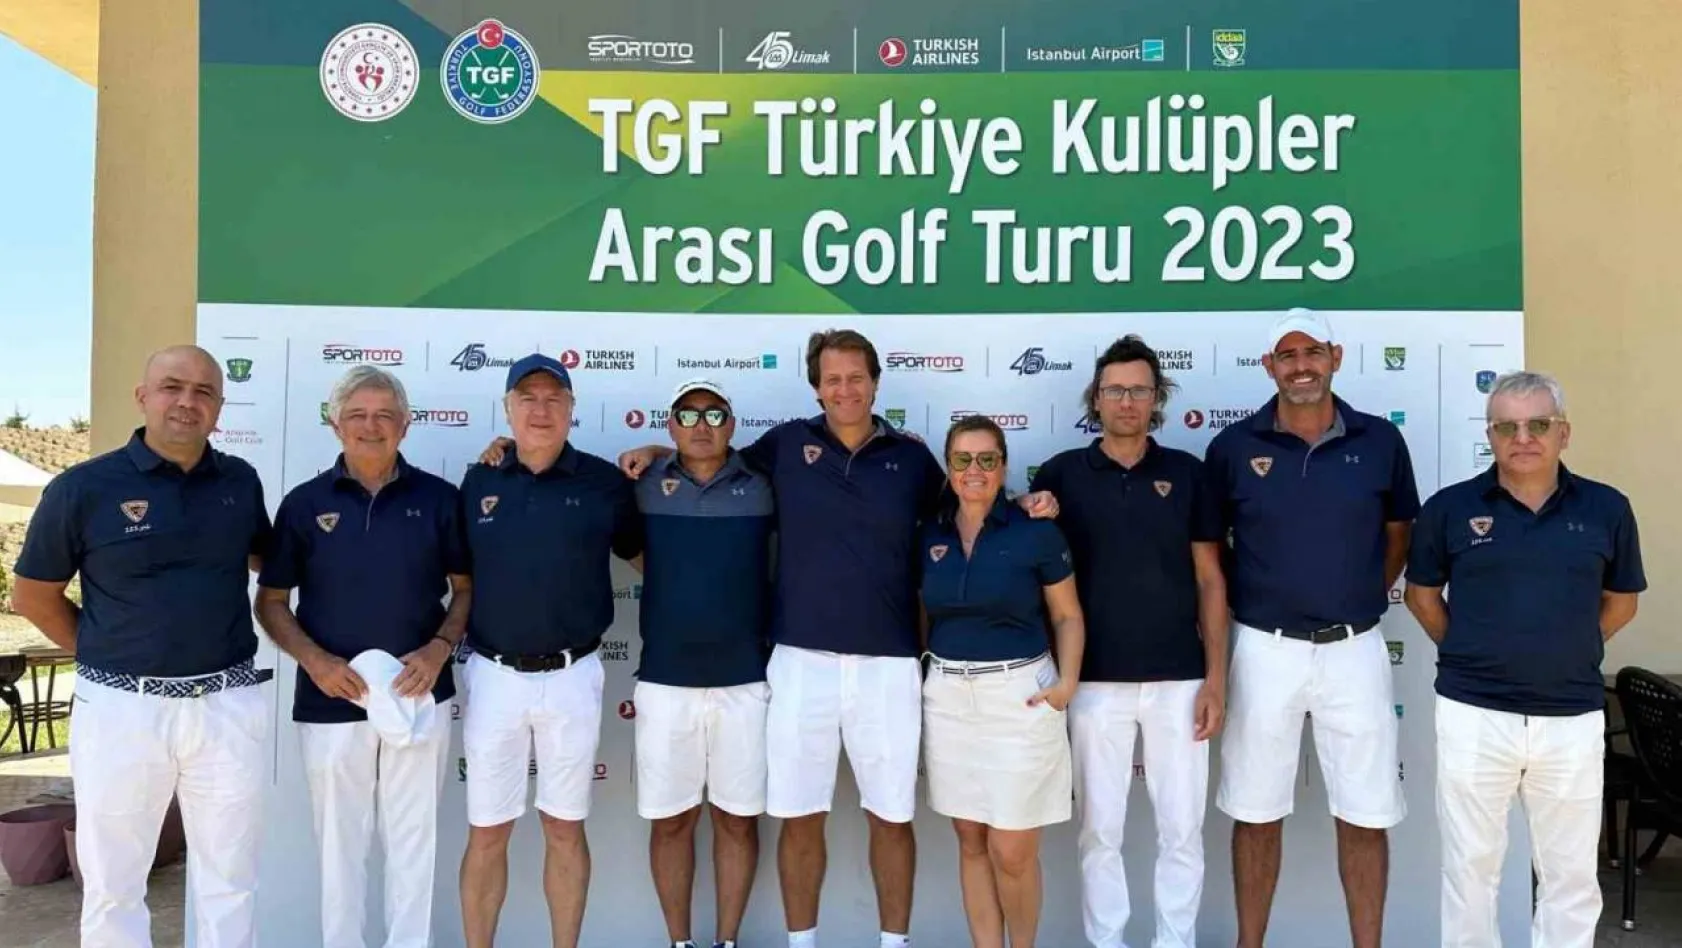 Golfçüler, TGF Türkiye Kulüpler Arası Golf Turu finali için İstanbul'da buluşuyor